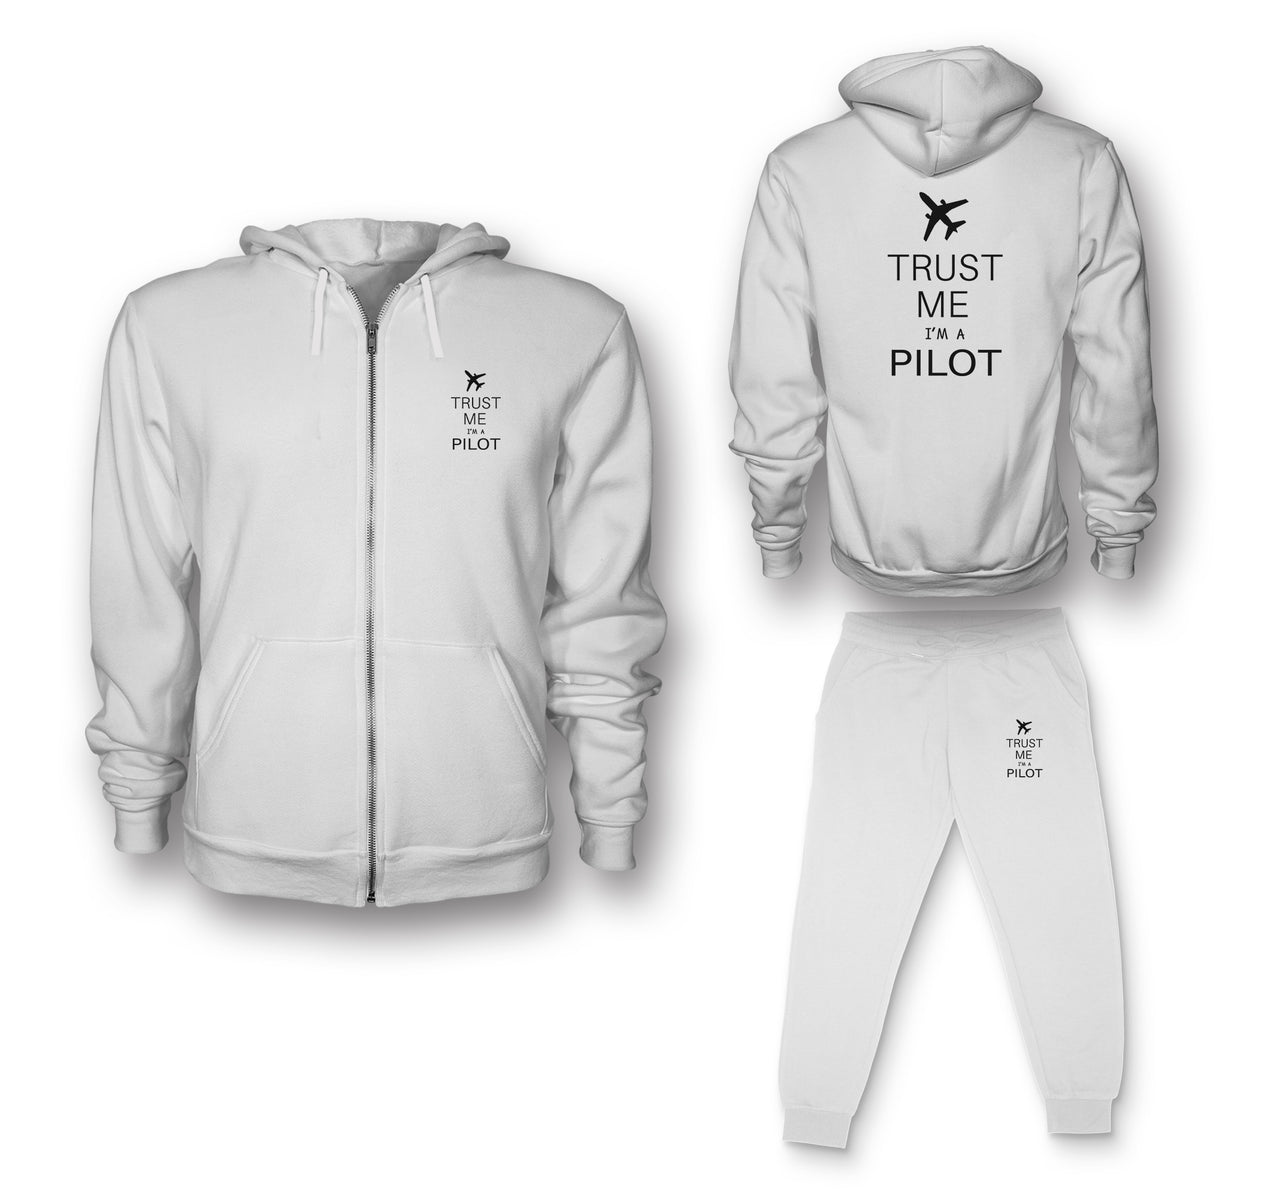 Trust Me I'm a Pilot 2 Designed Zipped Hoodies & Sweatpants Set